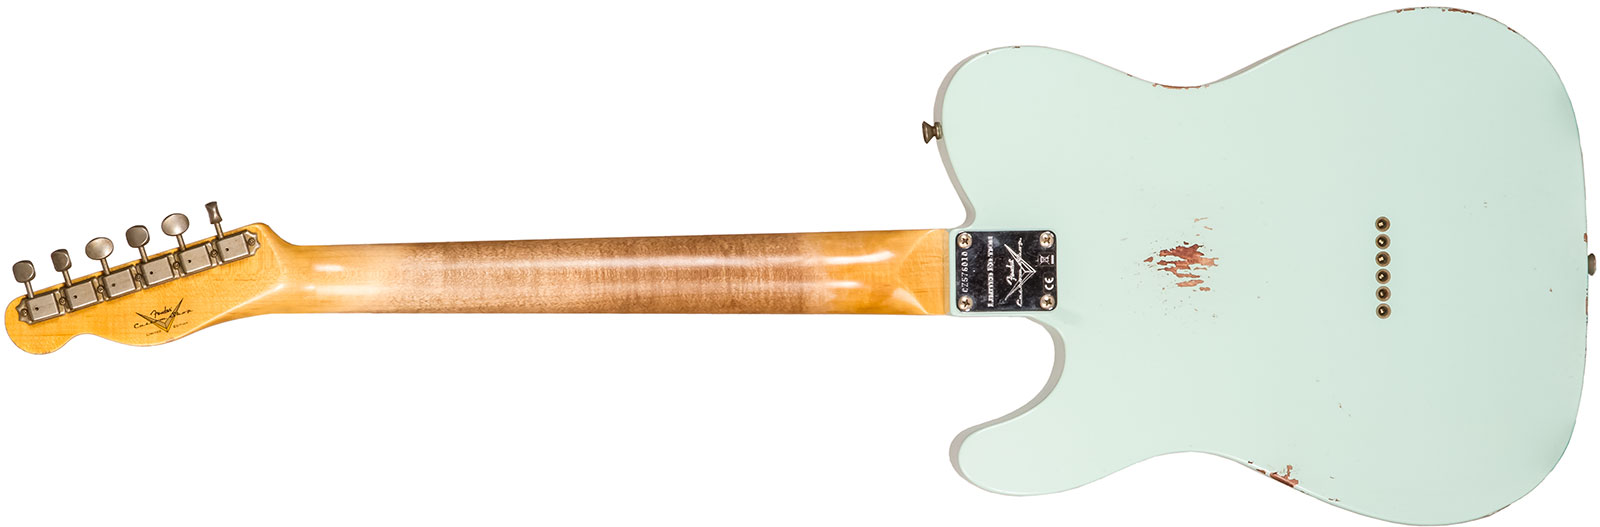 Fender Custom Shop Tele 1961 2s Ht Rw #cz576010 - Relic Aged Surf Green - Guitare Électrique Forme Tel - Variation 1